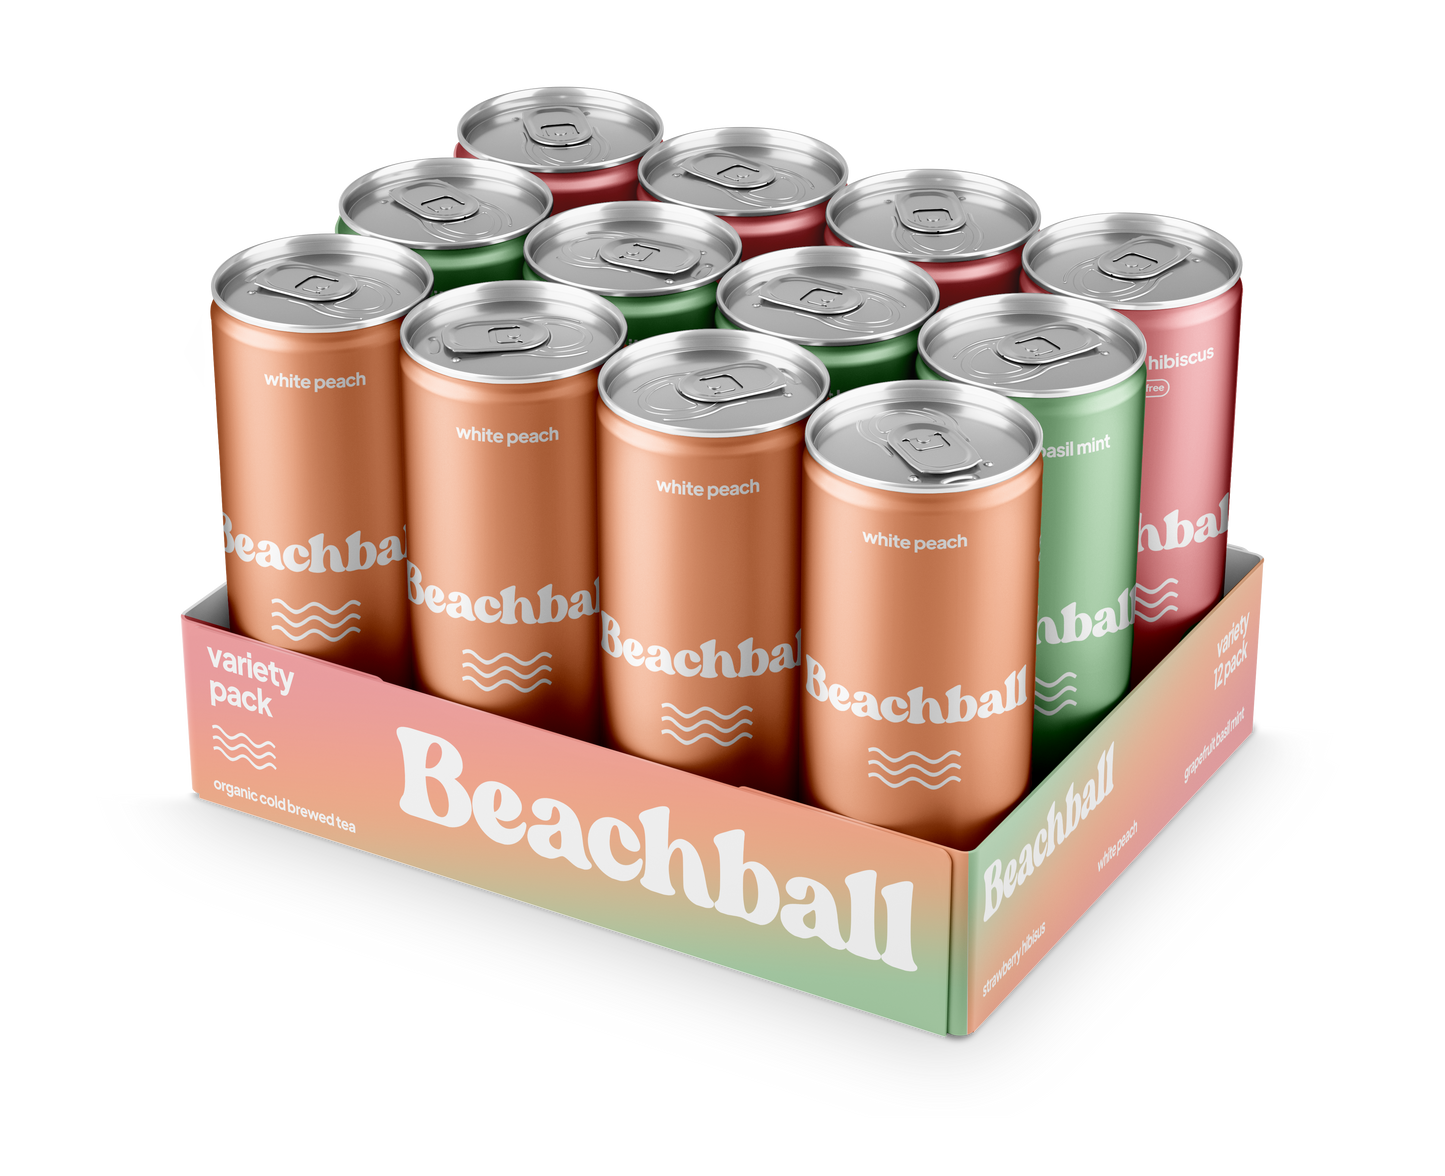 Beachball Variety Pack